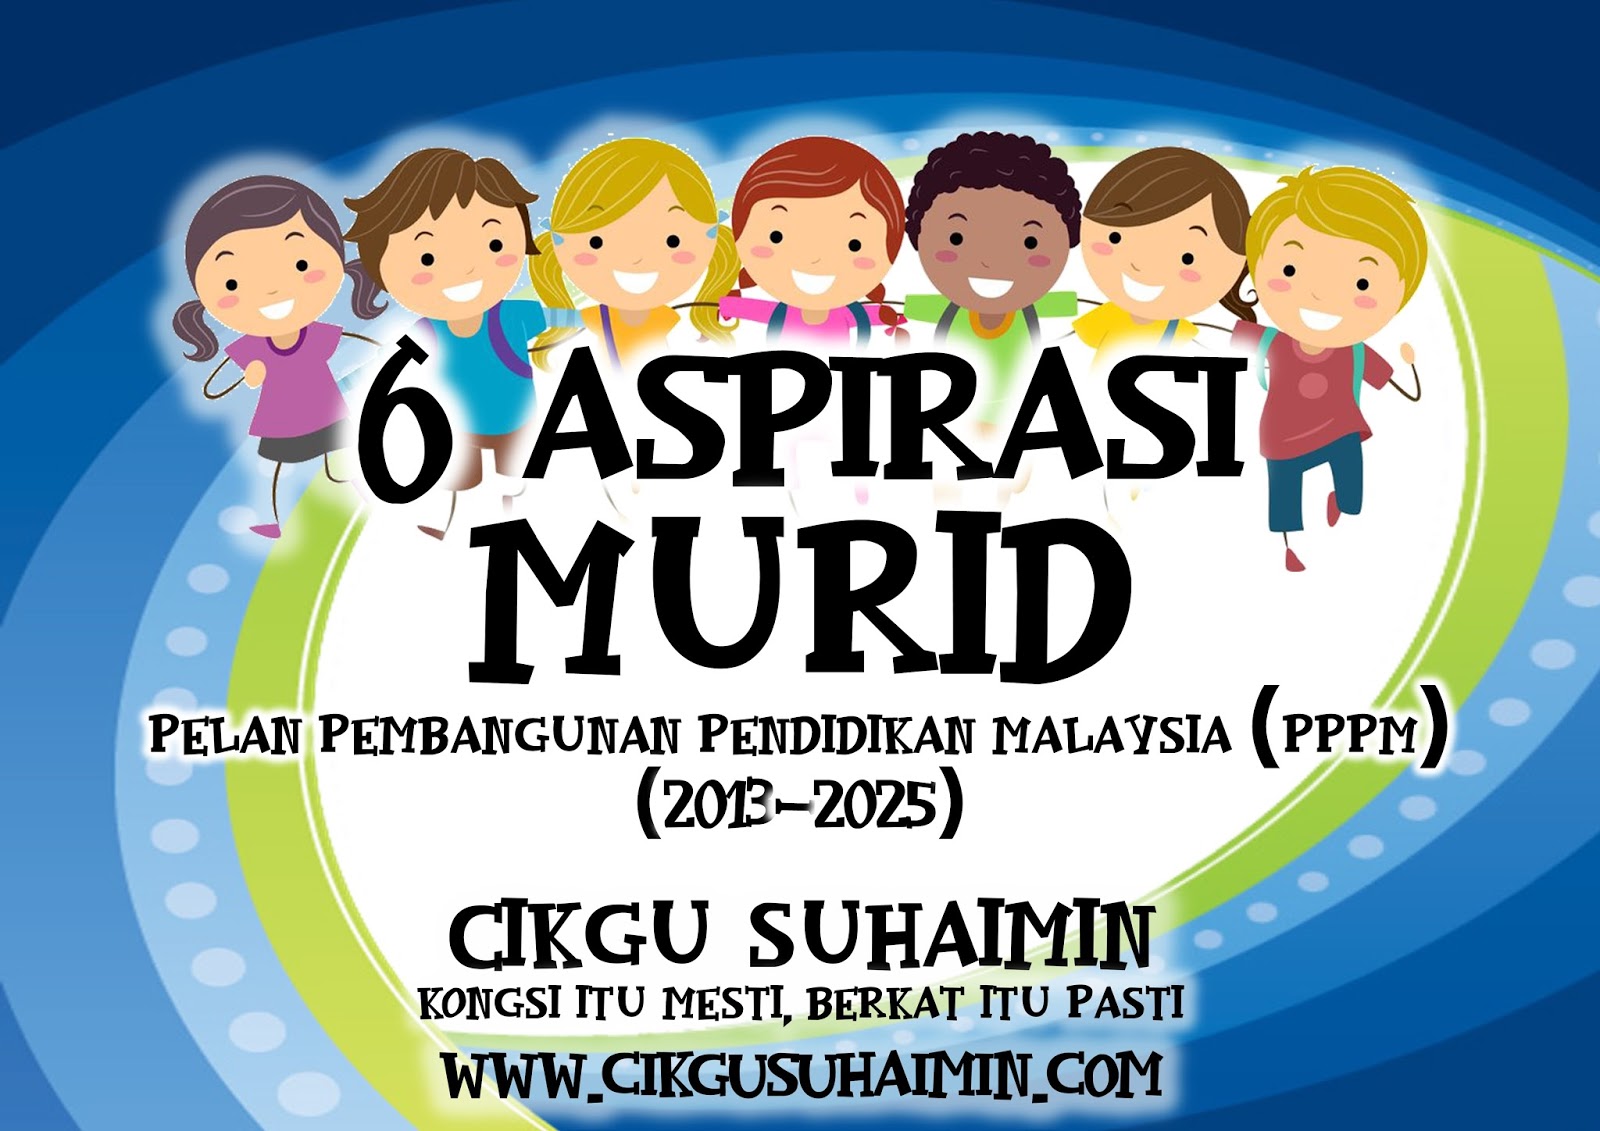 6 Aspirasi Murid dalam Pelan Pembangunan Pendidikan Malaysia (PPPM